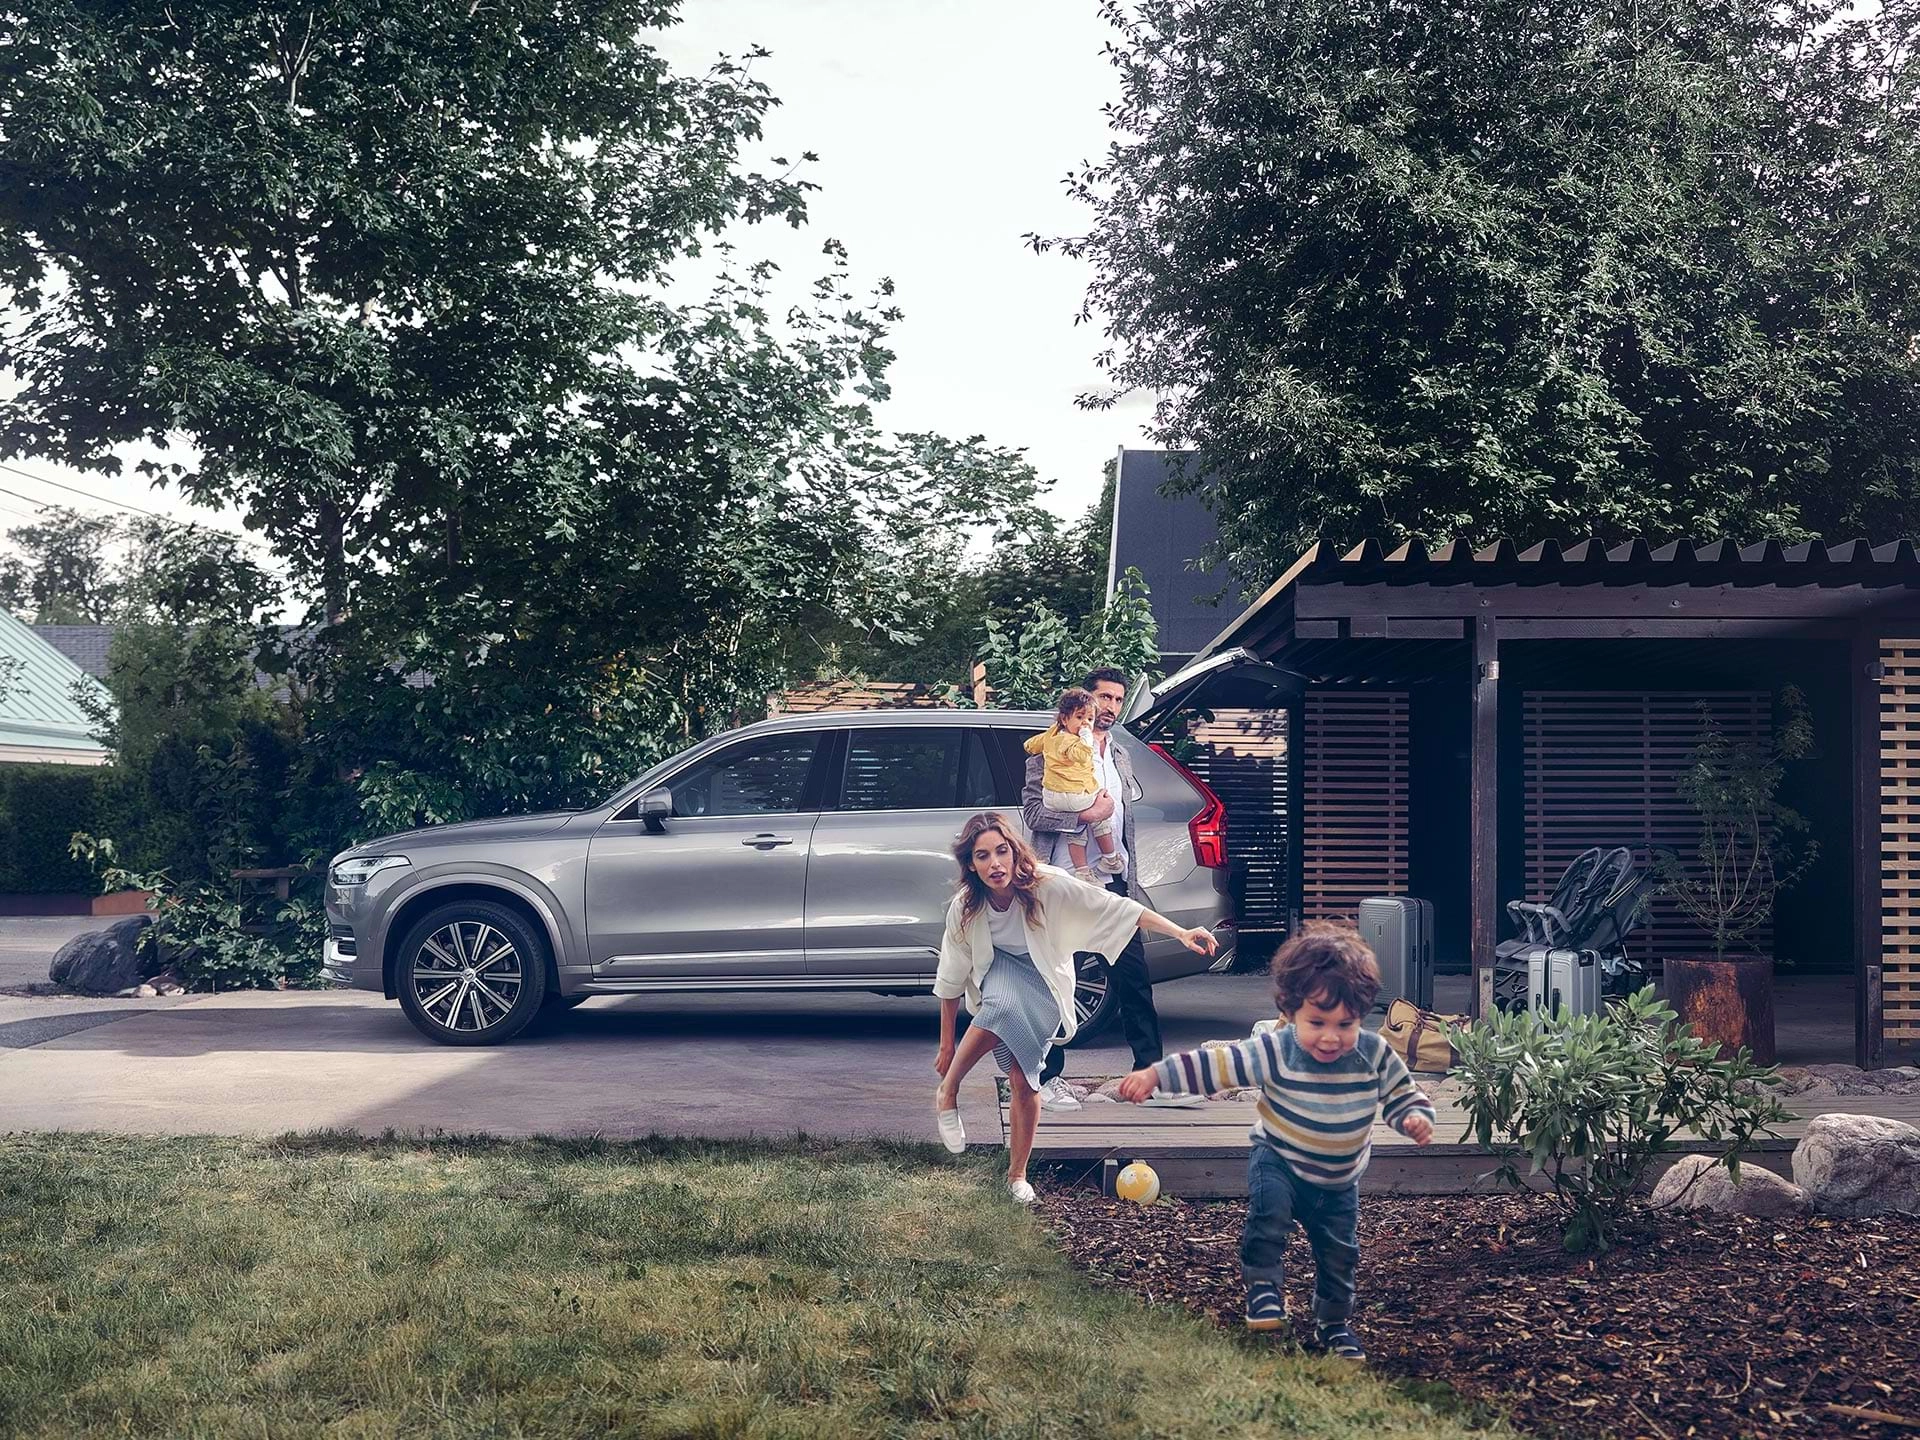 Une famille se prépare à partir en voyage à bord de son VUS Volvo. Un enfant traverse la cour en courant, poursuivi par sa mère.